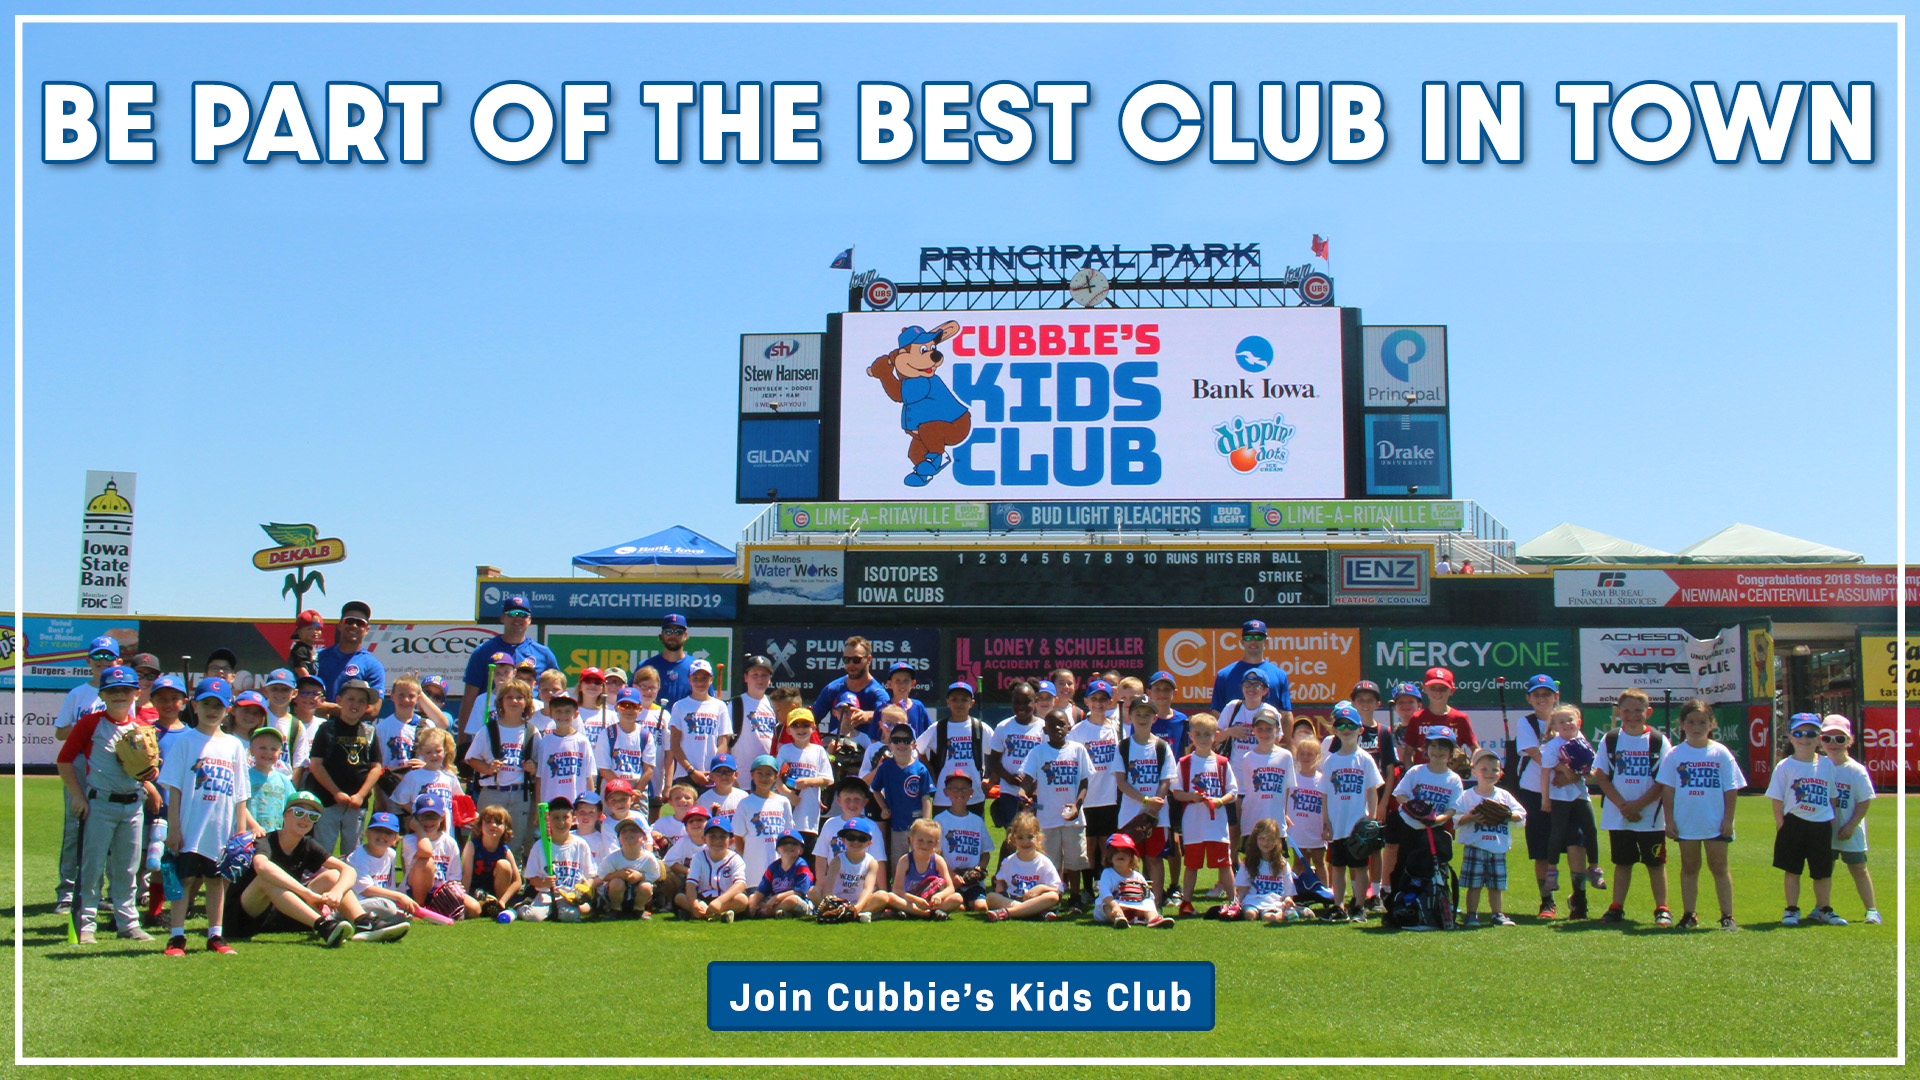 Cubbies Kids Club 